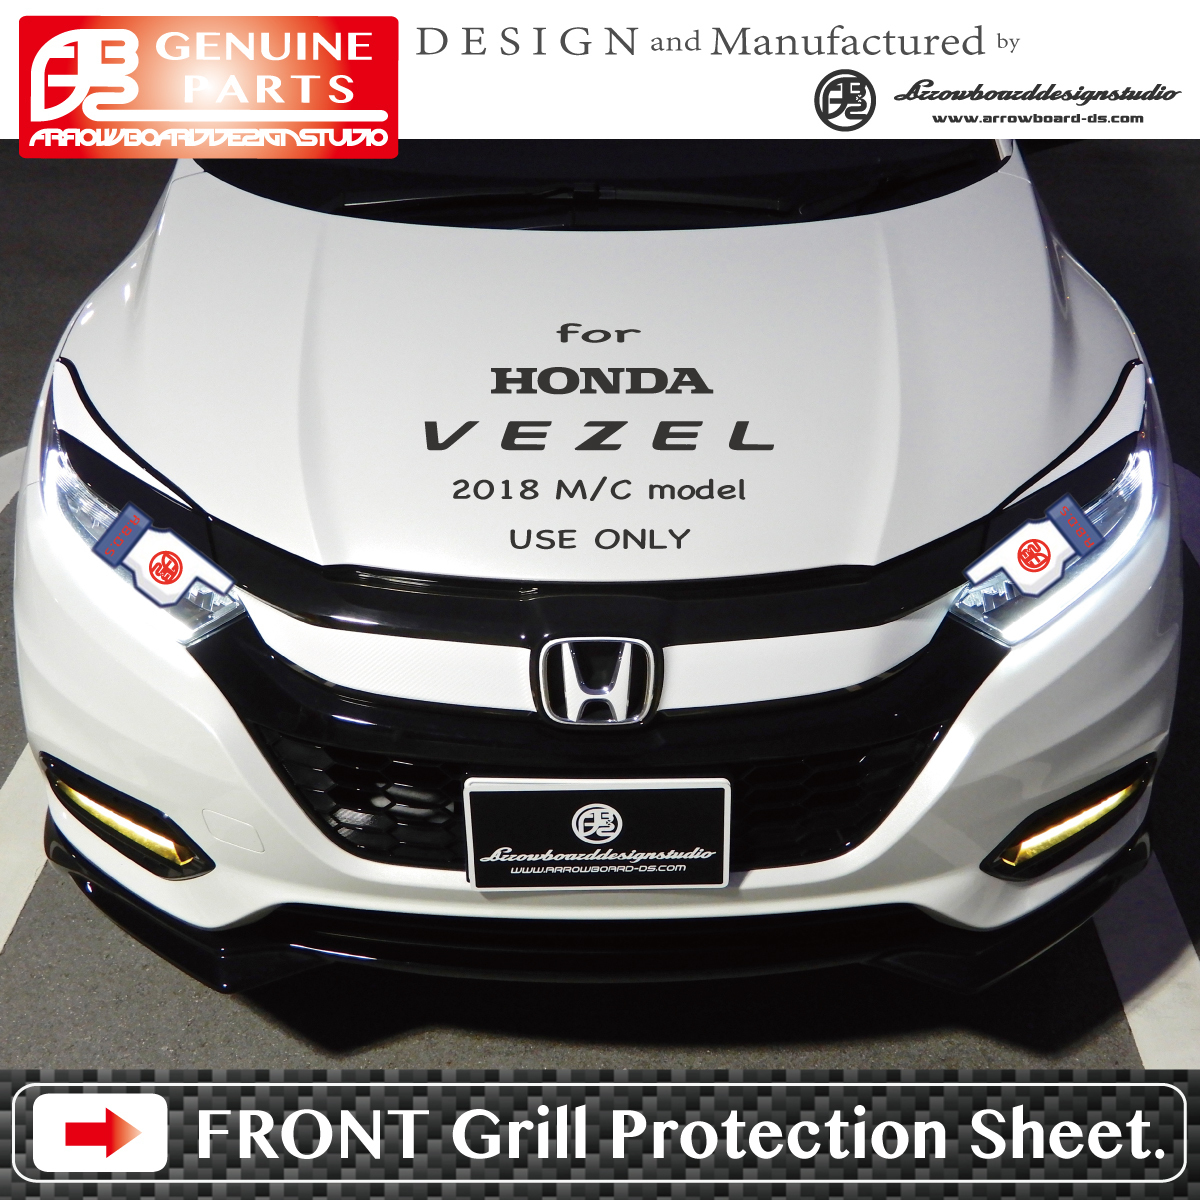 VEZEL 2018 MC model for * front grille protection seat L/R 2set/ Vezel /RU/RS/TOURING/ latter term /ABDS-MCGF68 /ArrowBoardDesignStudio